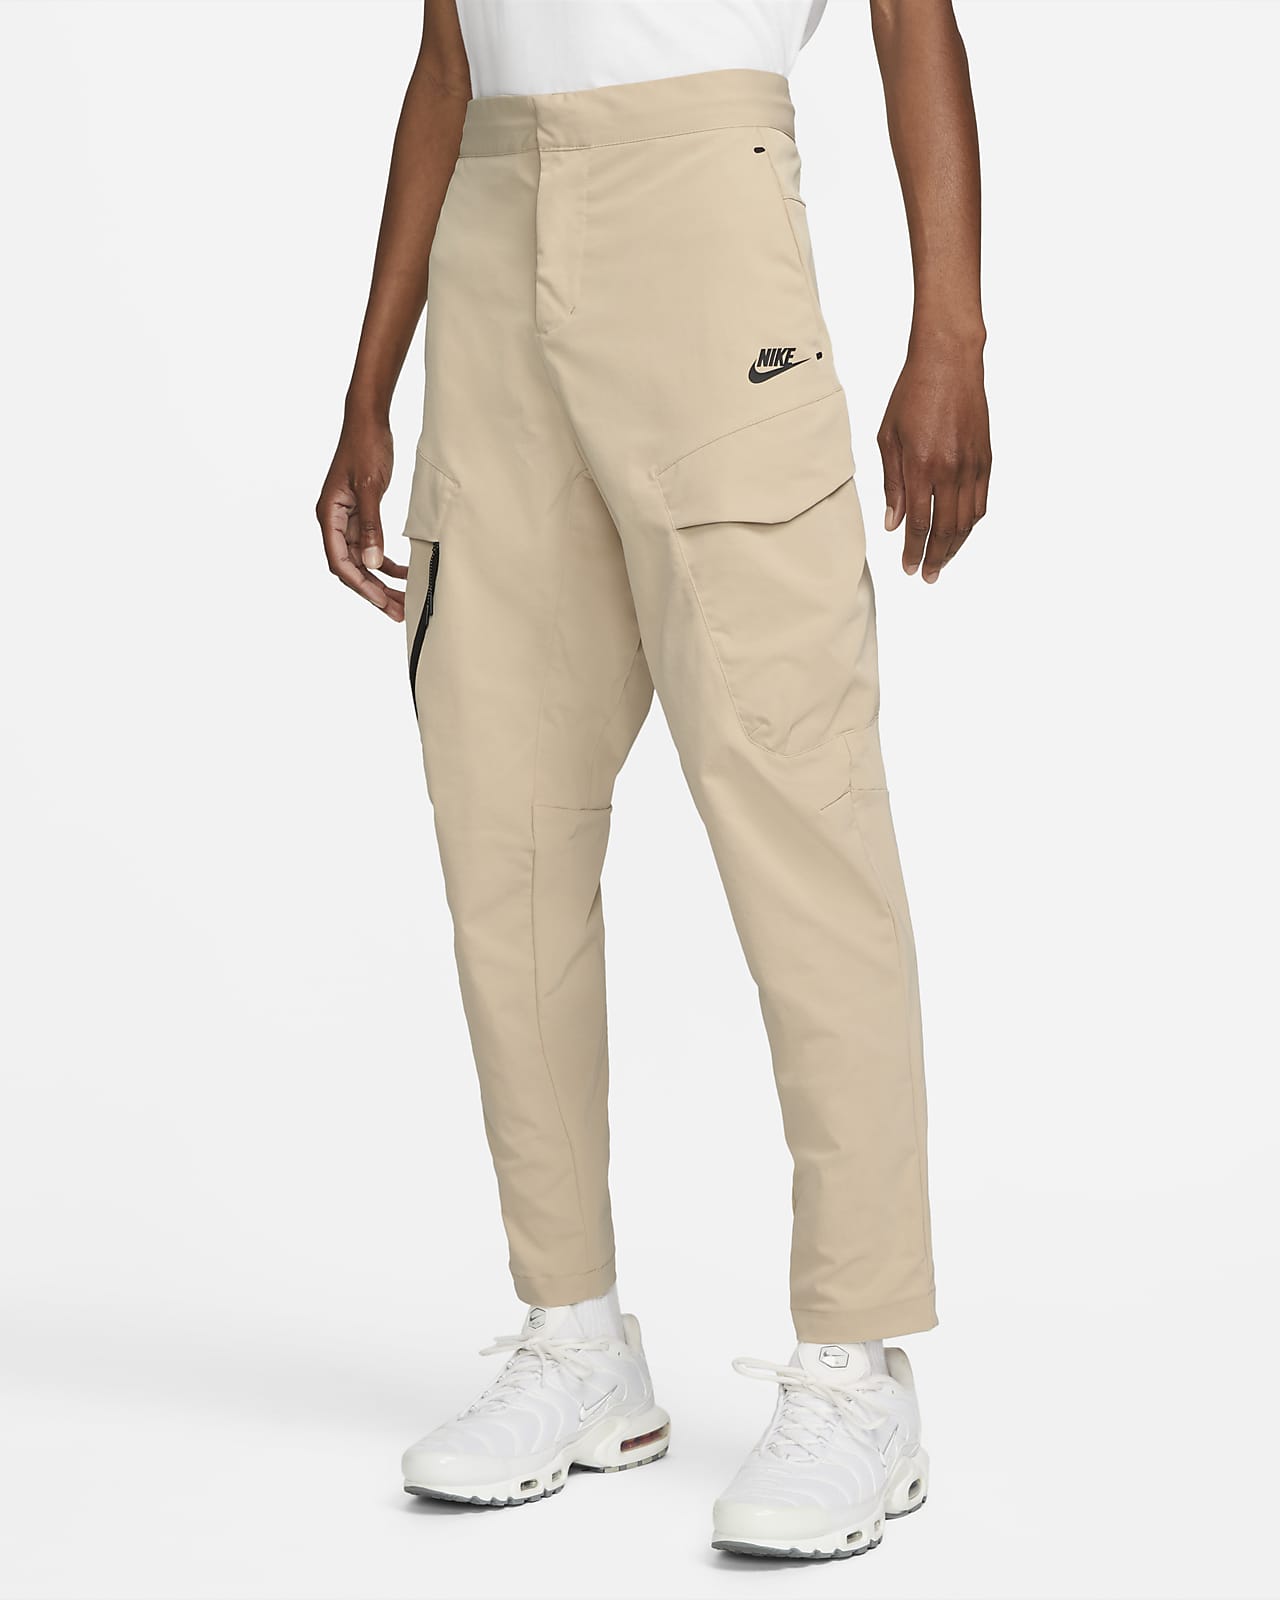 Nike Sportswear Tech Essentials Men's Woven Unlined Cargo Pants.